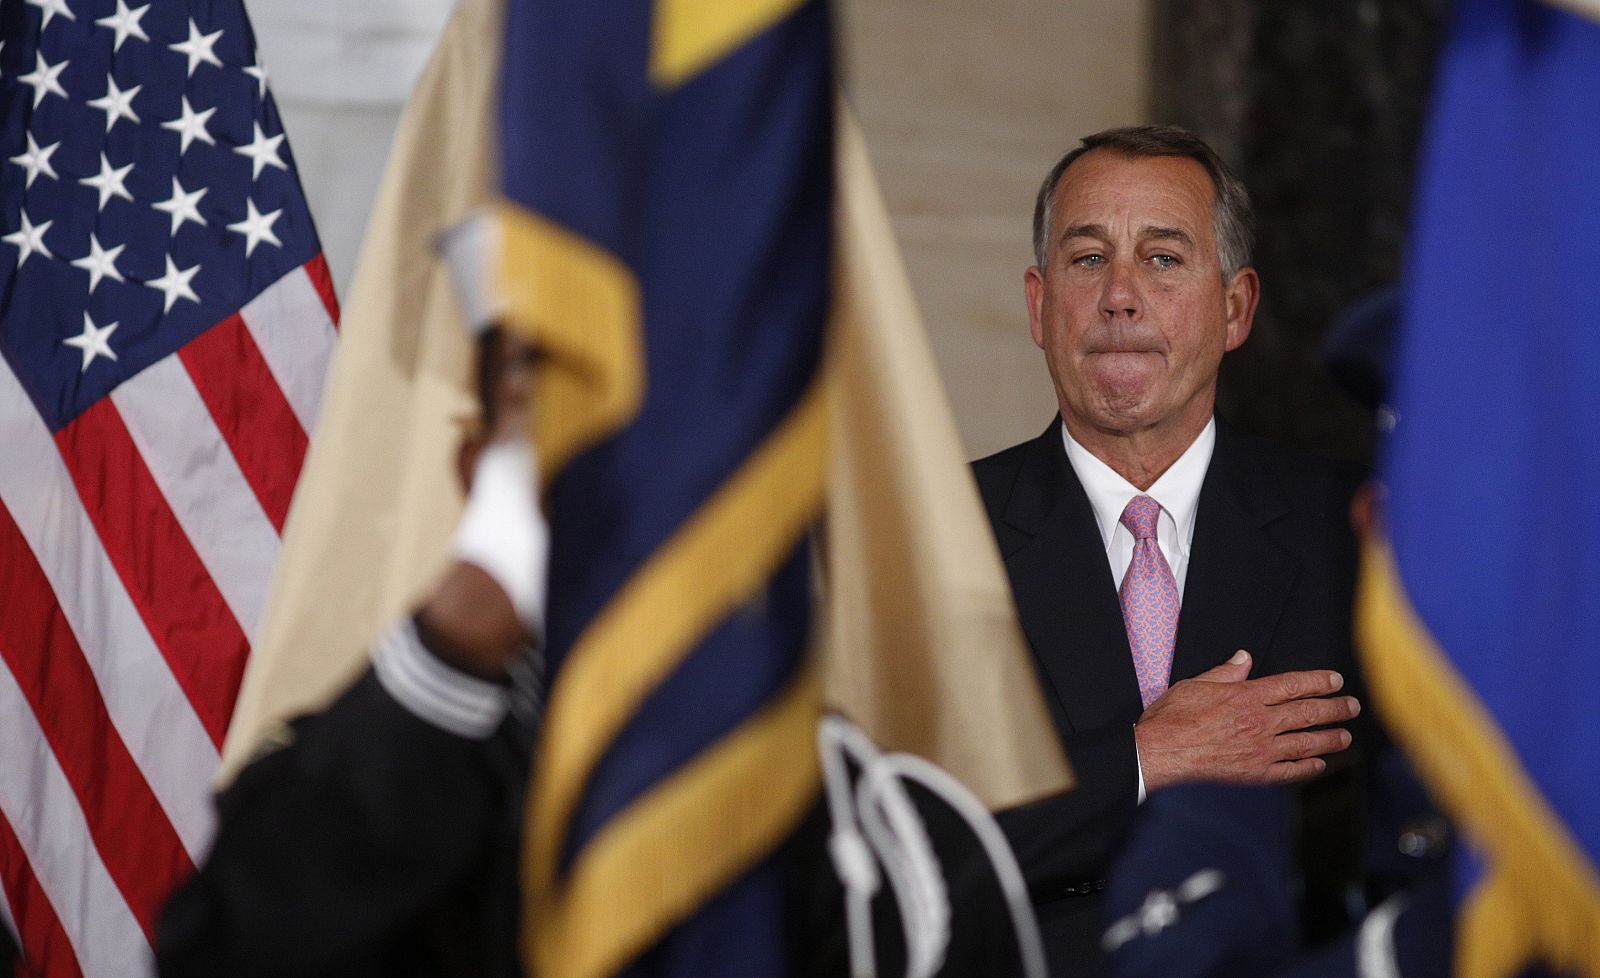 El presidente de la Cámara de Representantes, el republicano John Boehner, durante un acto el 19 de noviembre en Washington